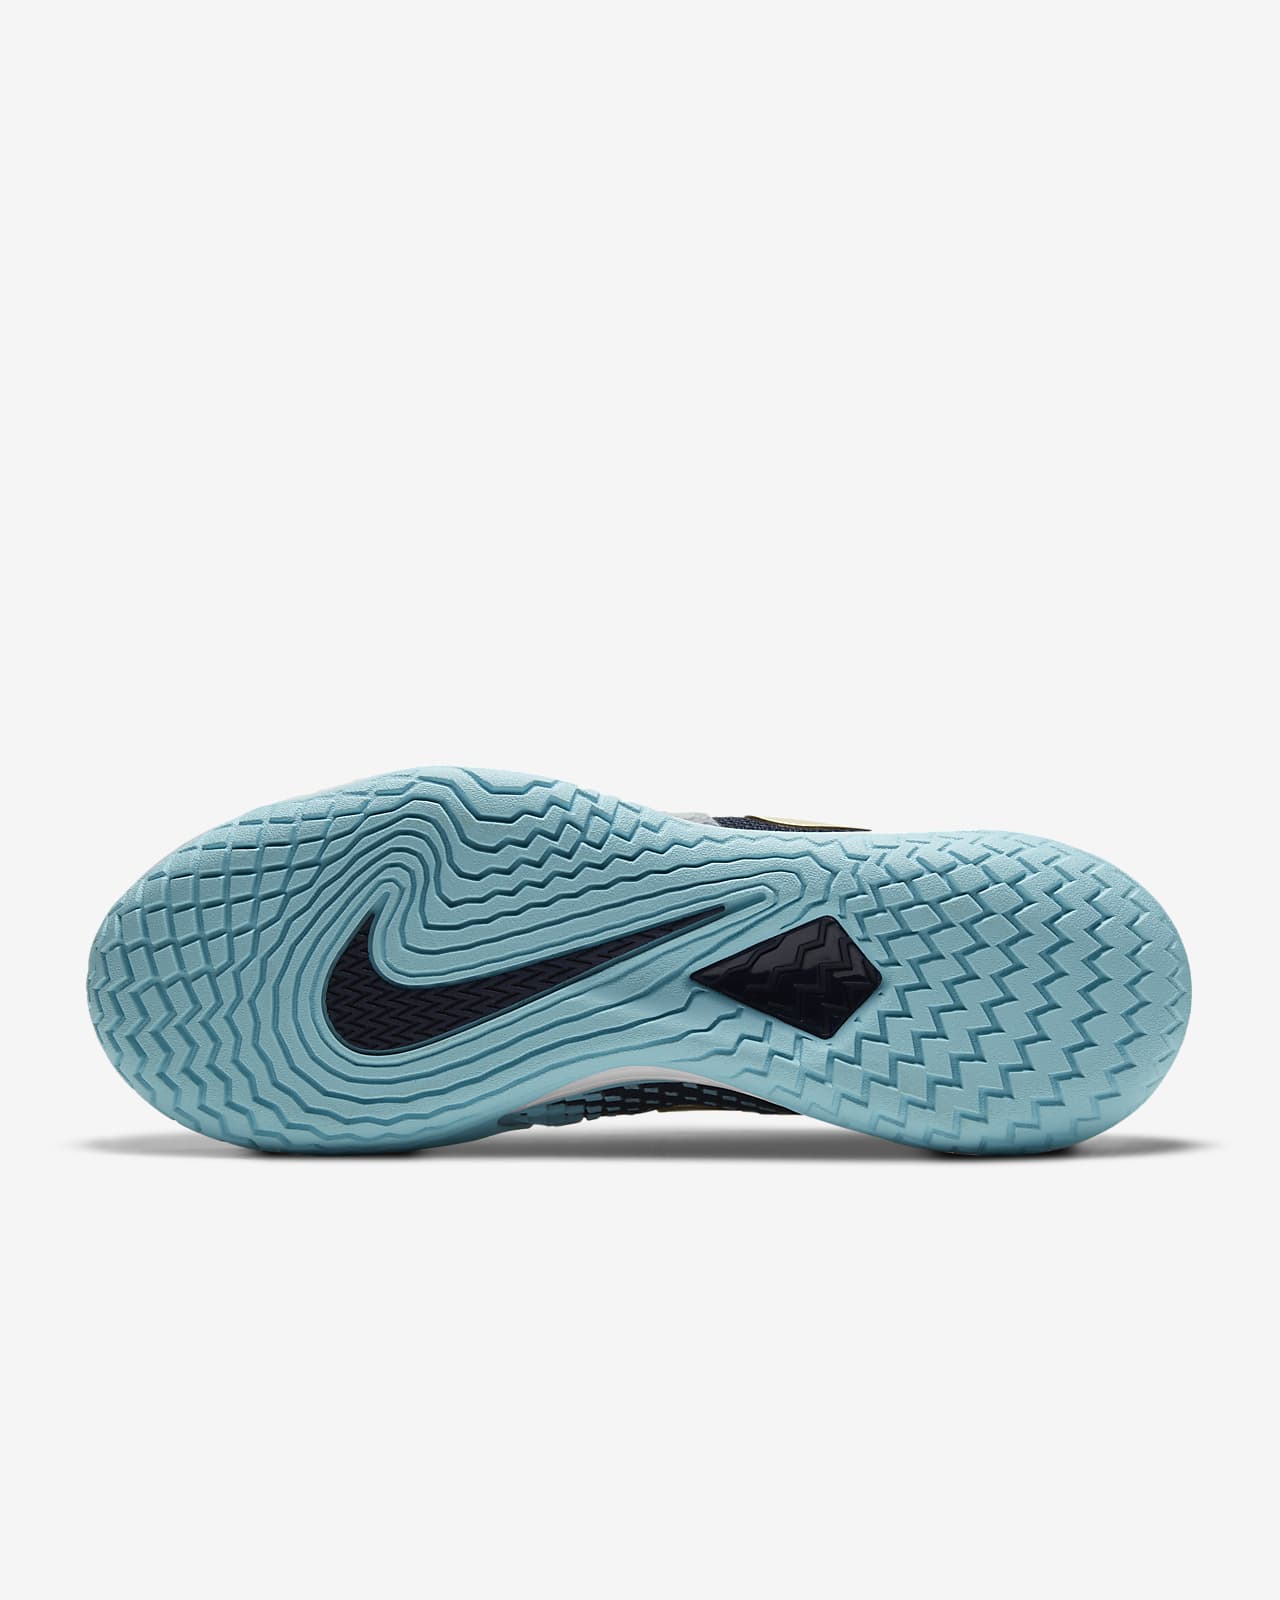 NikeCourt Air Zoom Vapor Cage 4 Men’s Hard Court Tennis Shoes